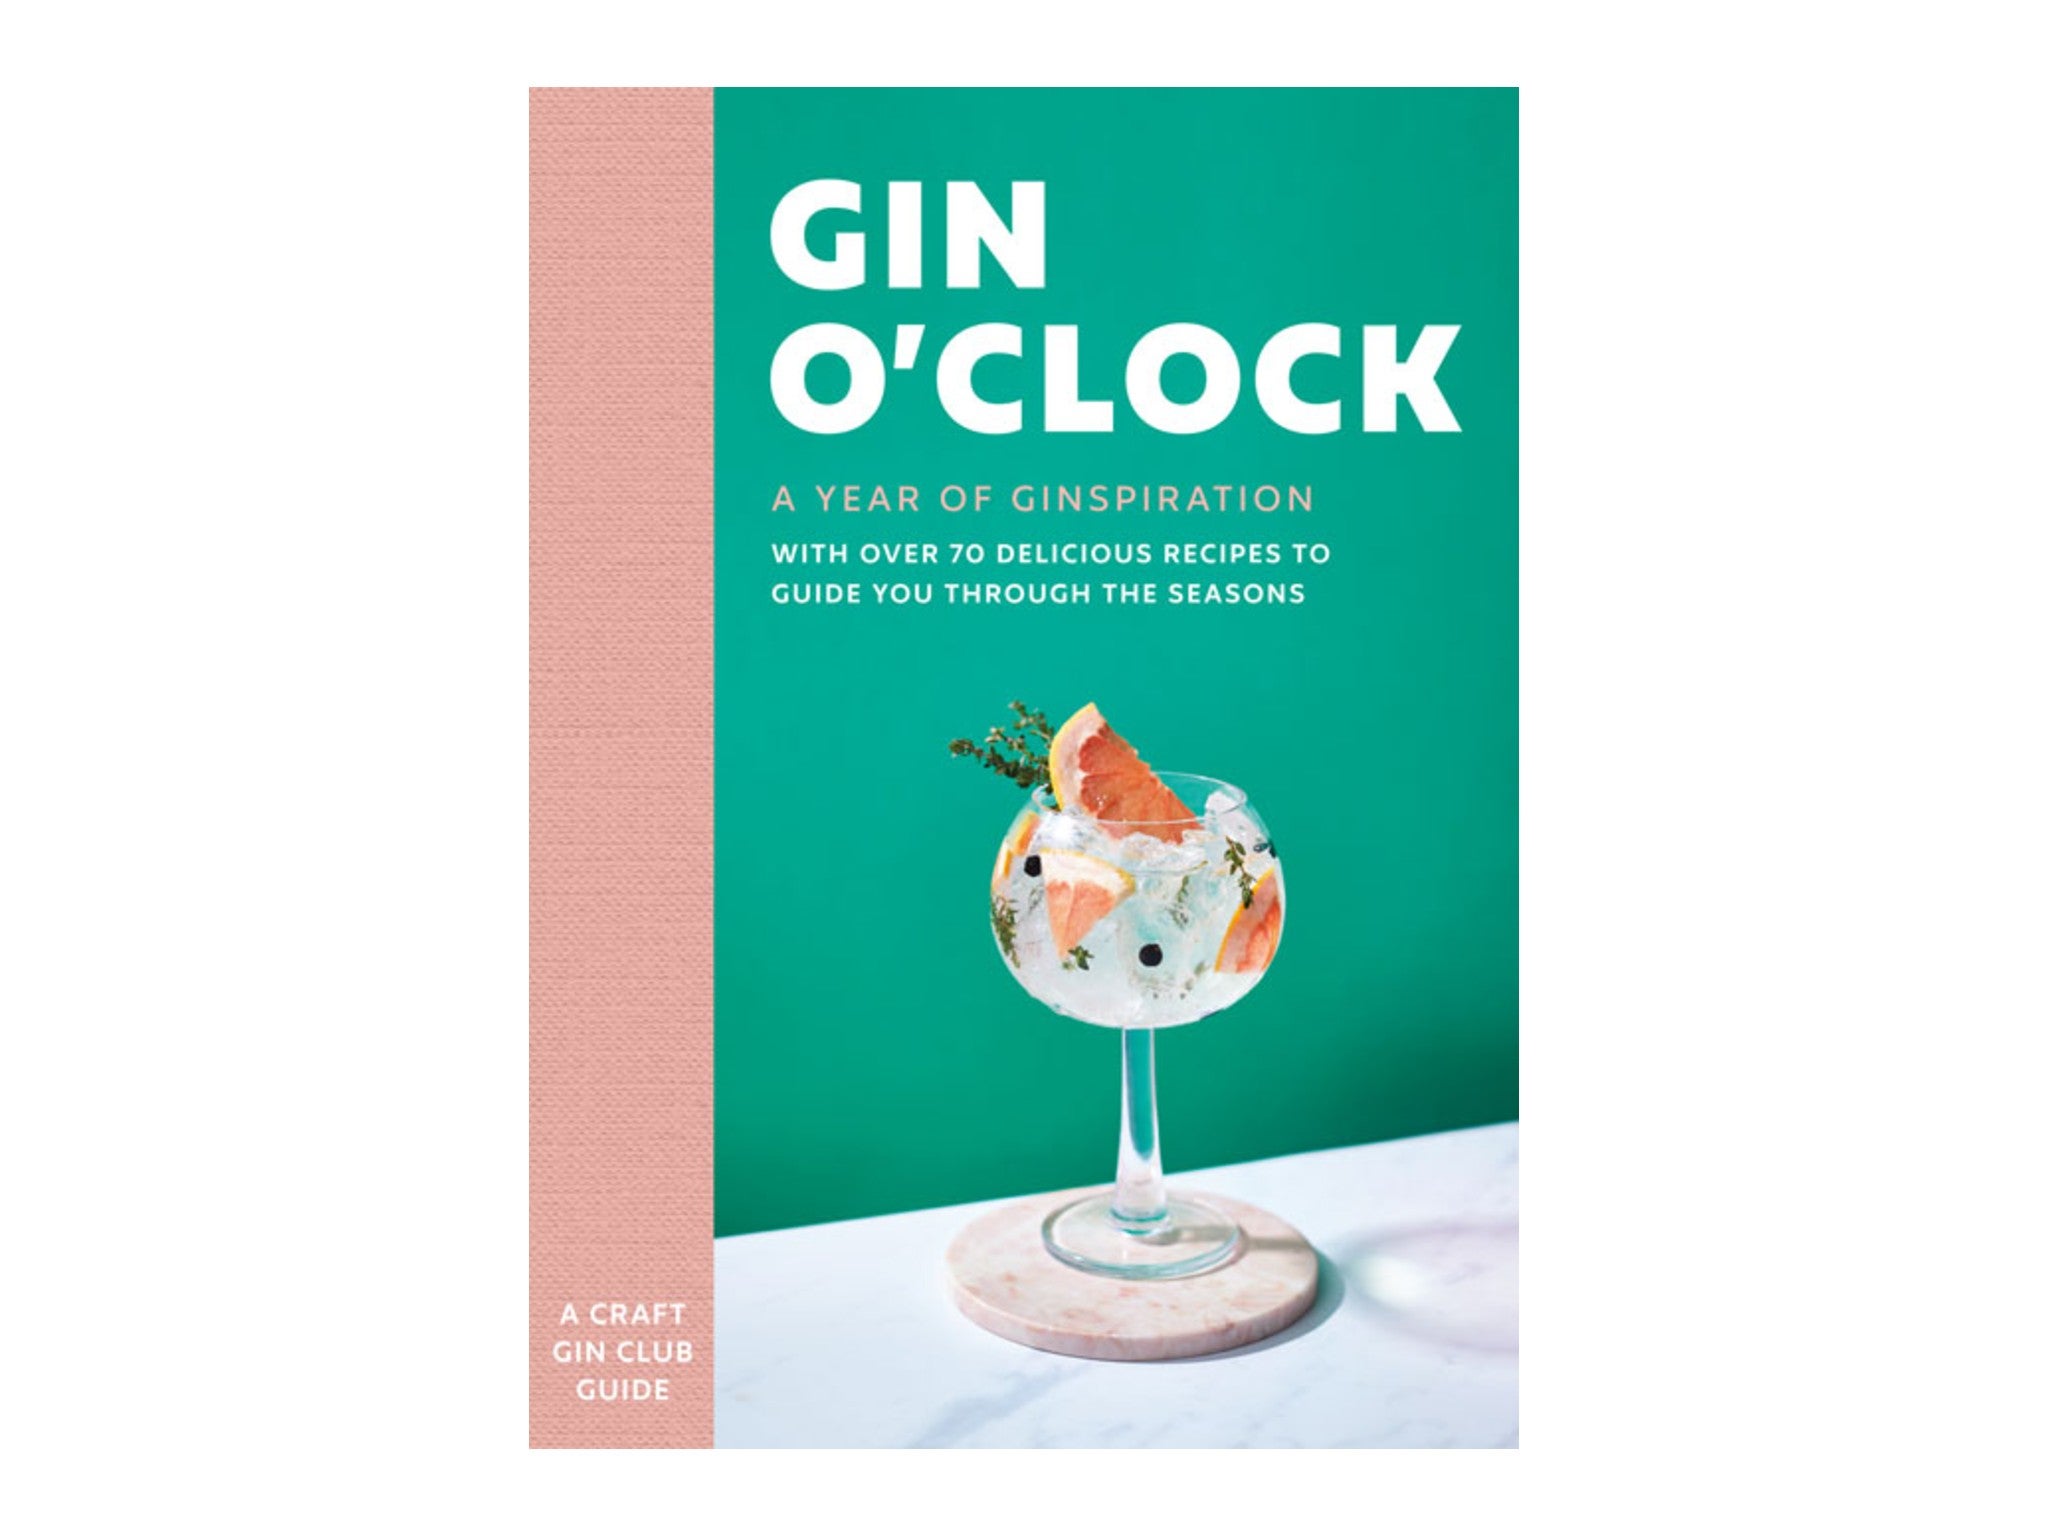 _‘Gin O’Clock’ by Craft Gin Club indybest.jpeg